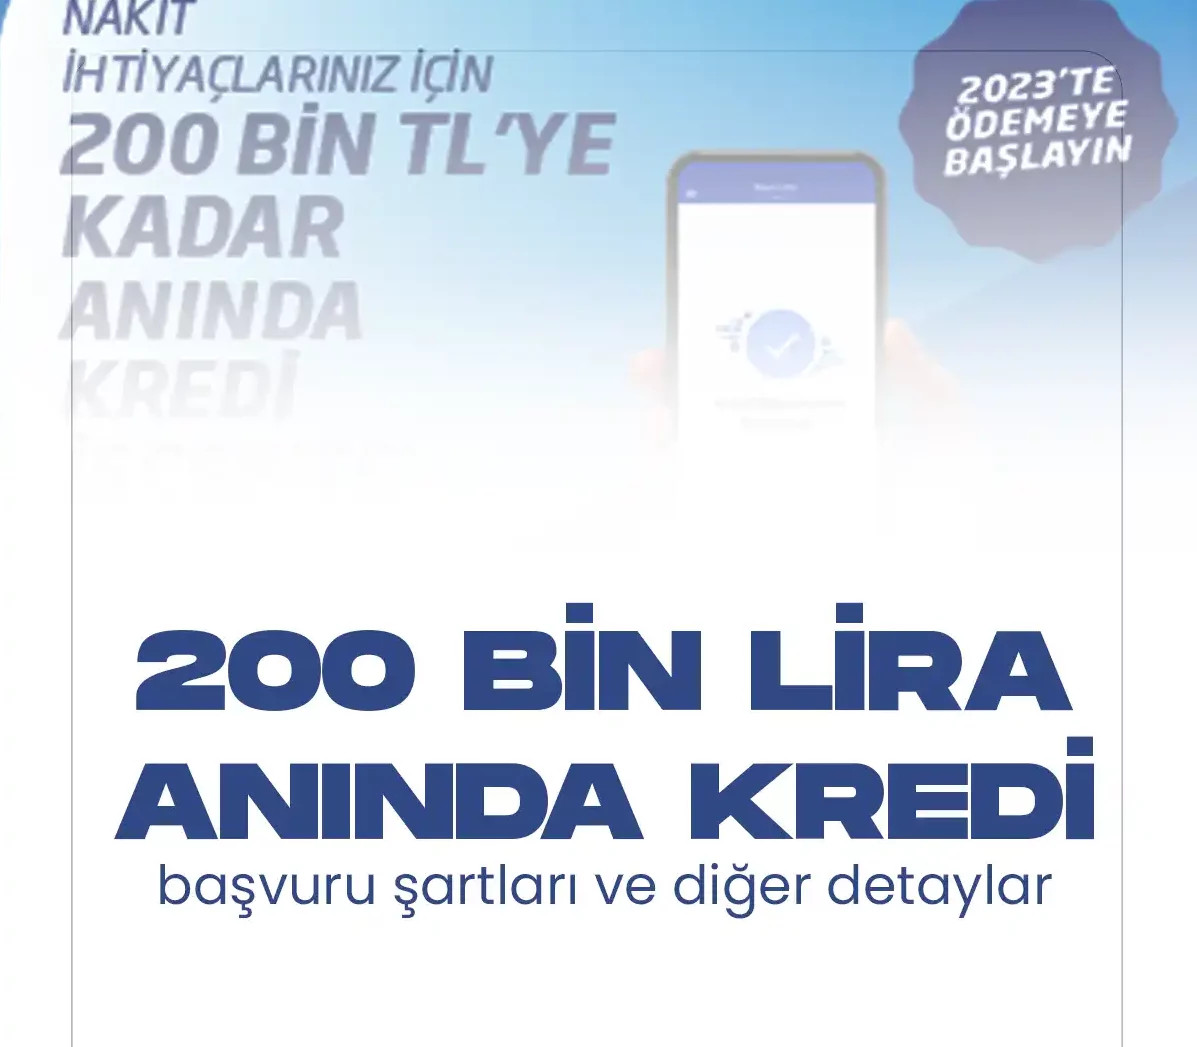 Türkiye İş Bankası 200 bin liraya kadar anında kredi kampanyası sürüyor. İhtiyaç kredisi kampanyasına dair tüm detaylar bu haberde.